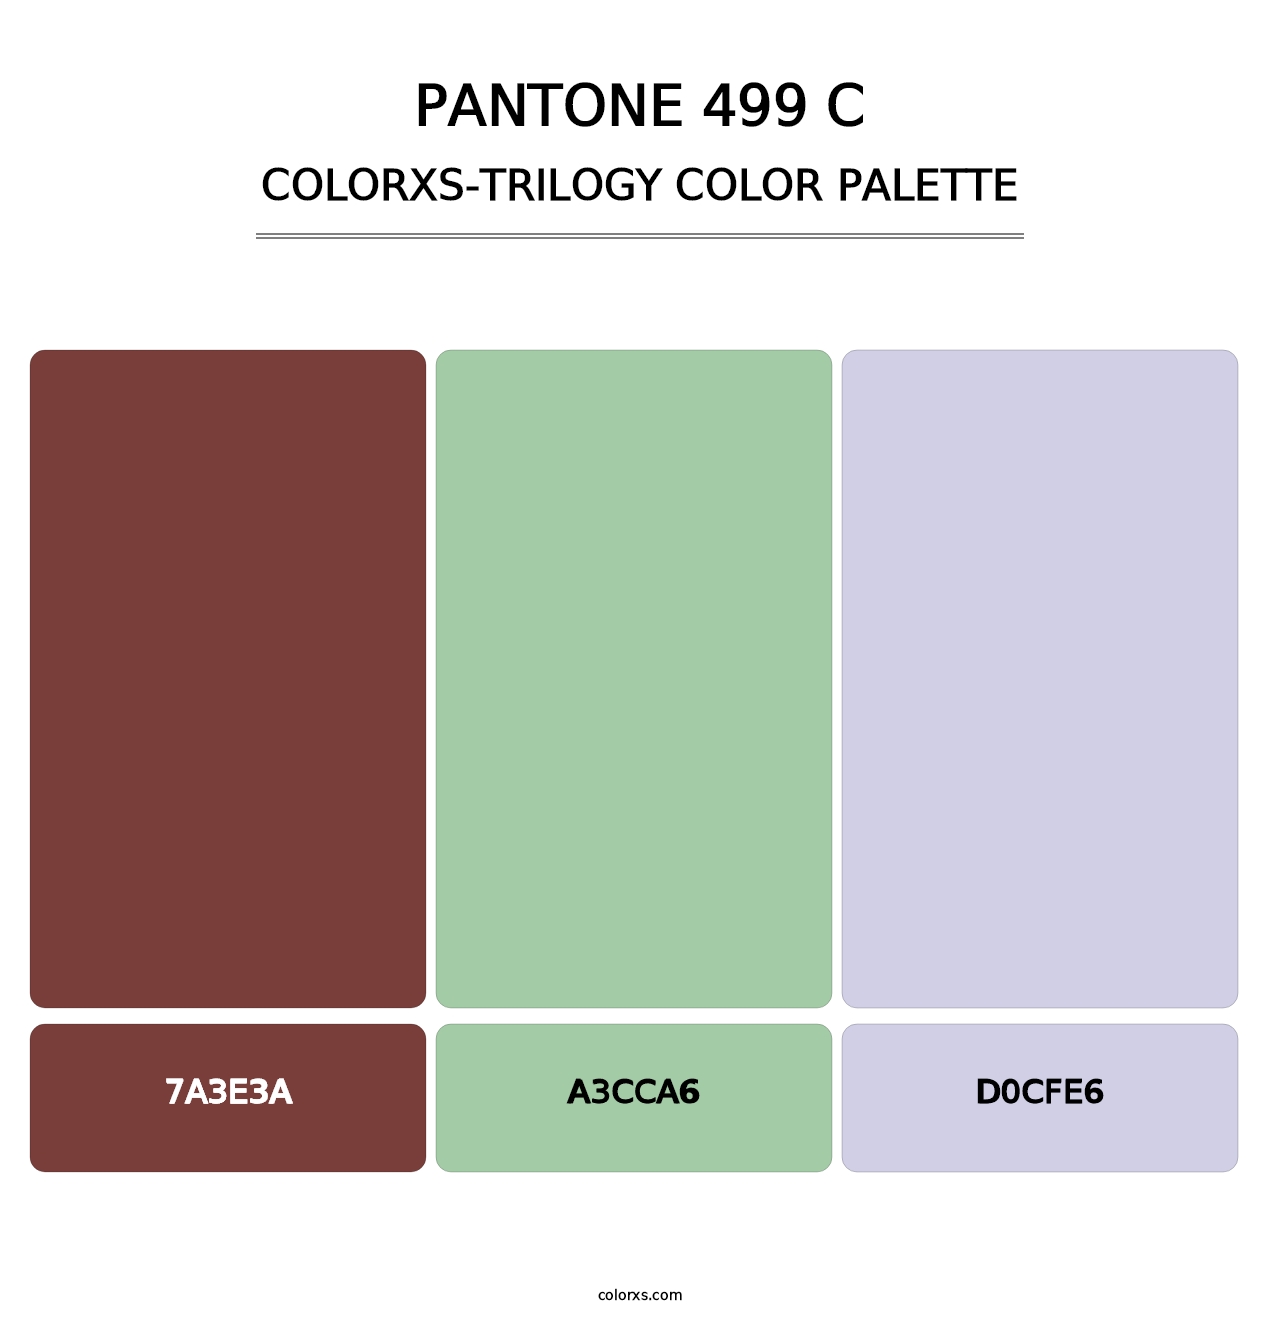 PANTONE 499 C - Colorxs Trilogy Palette